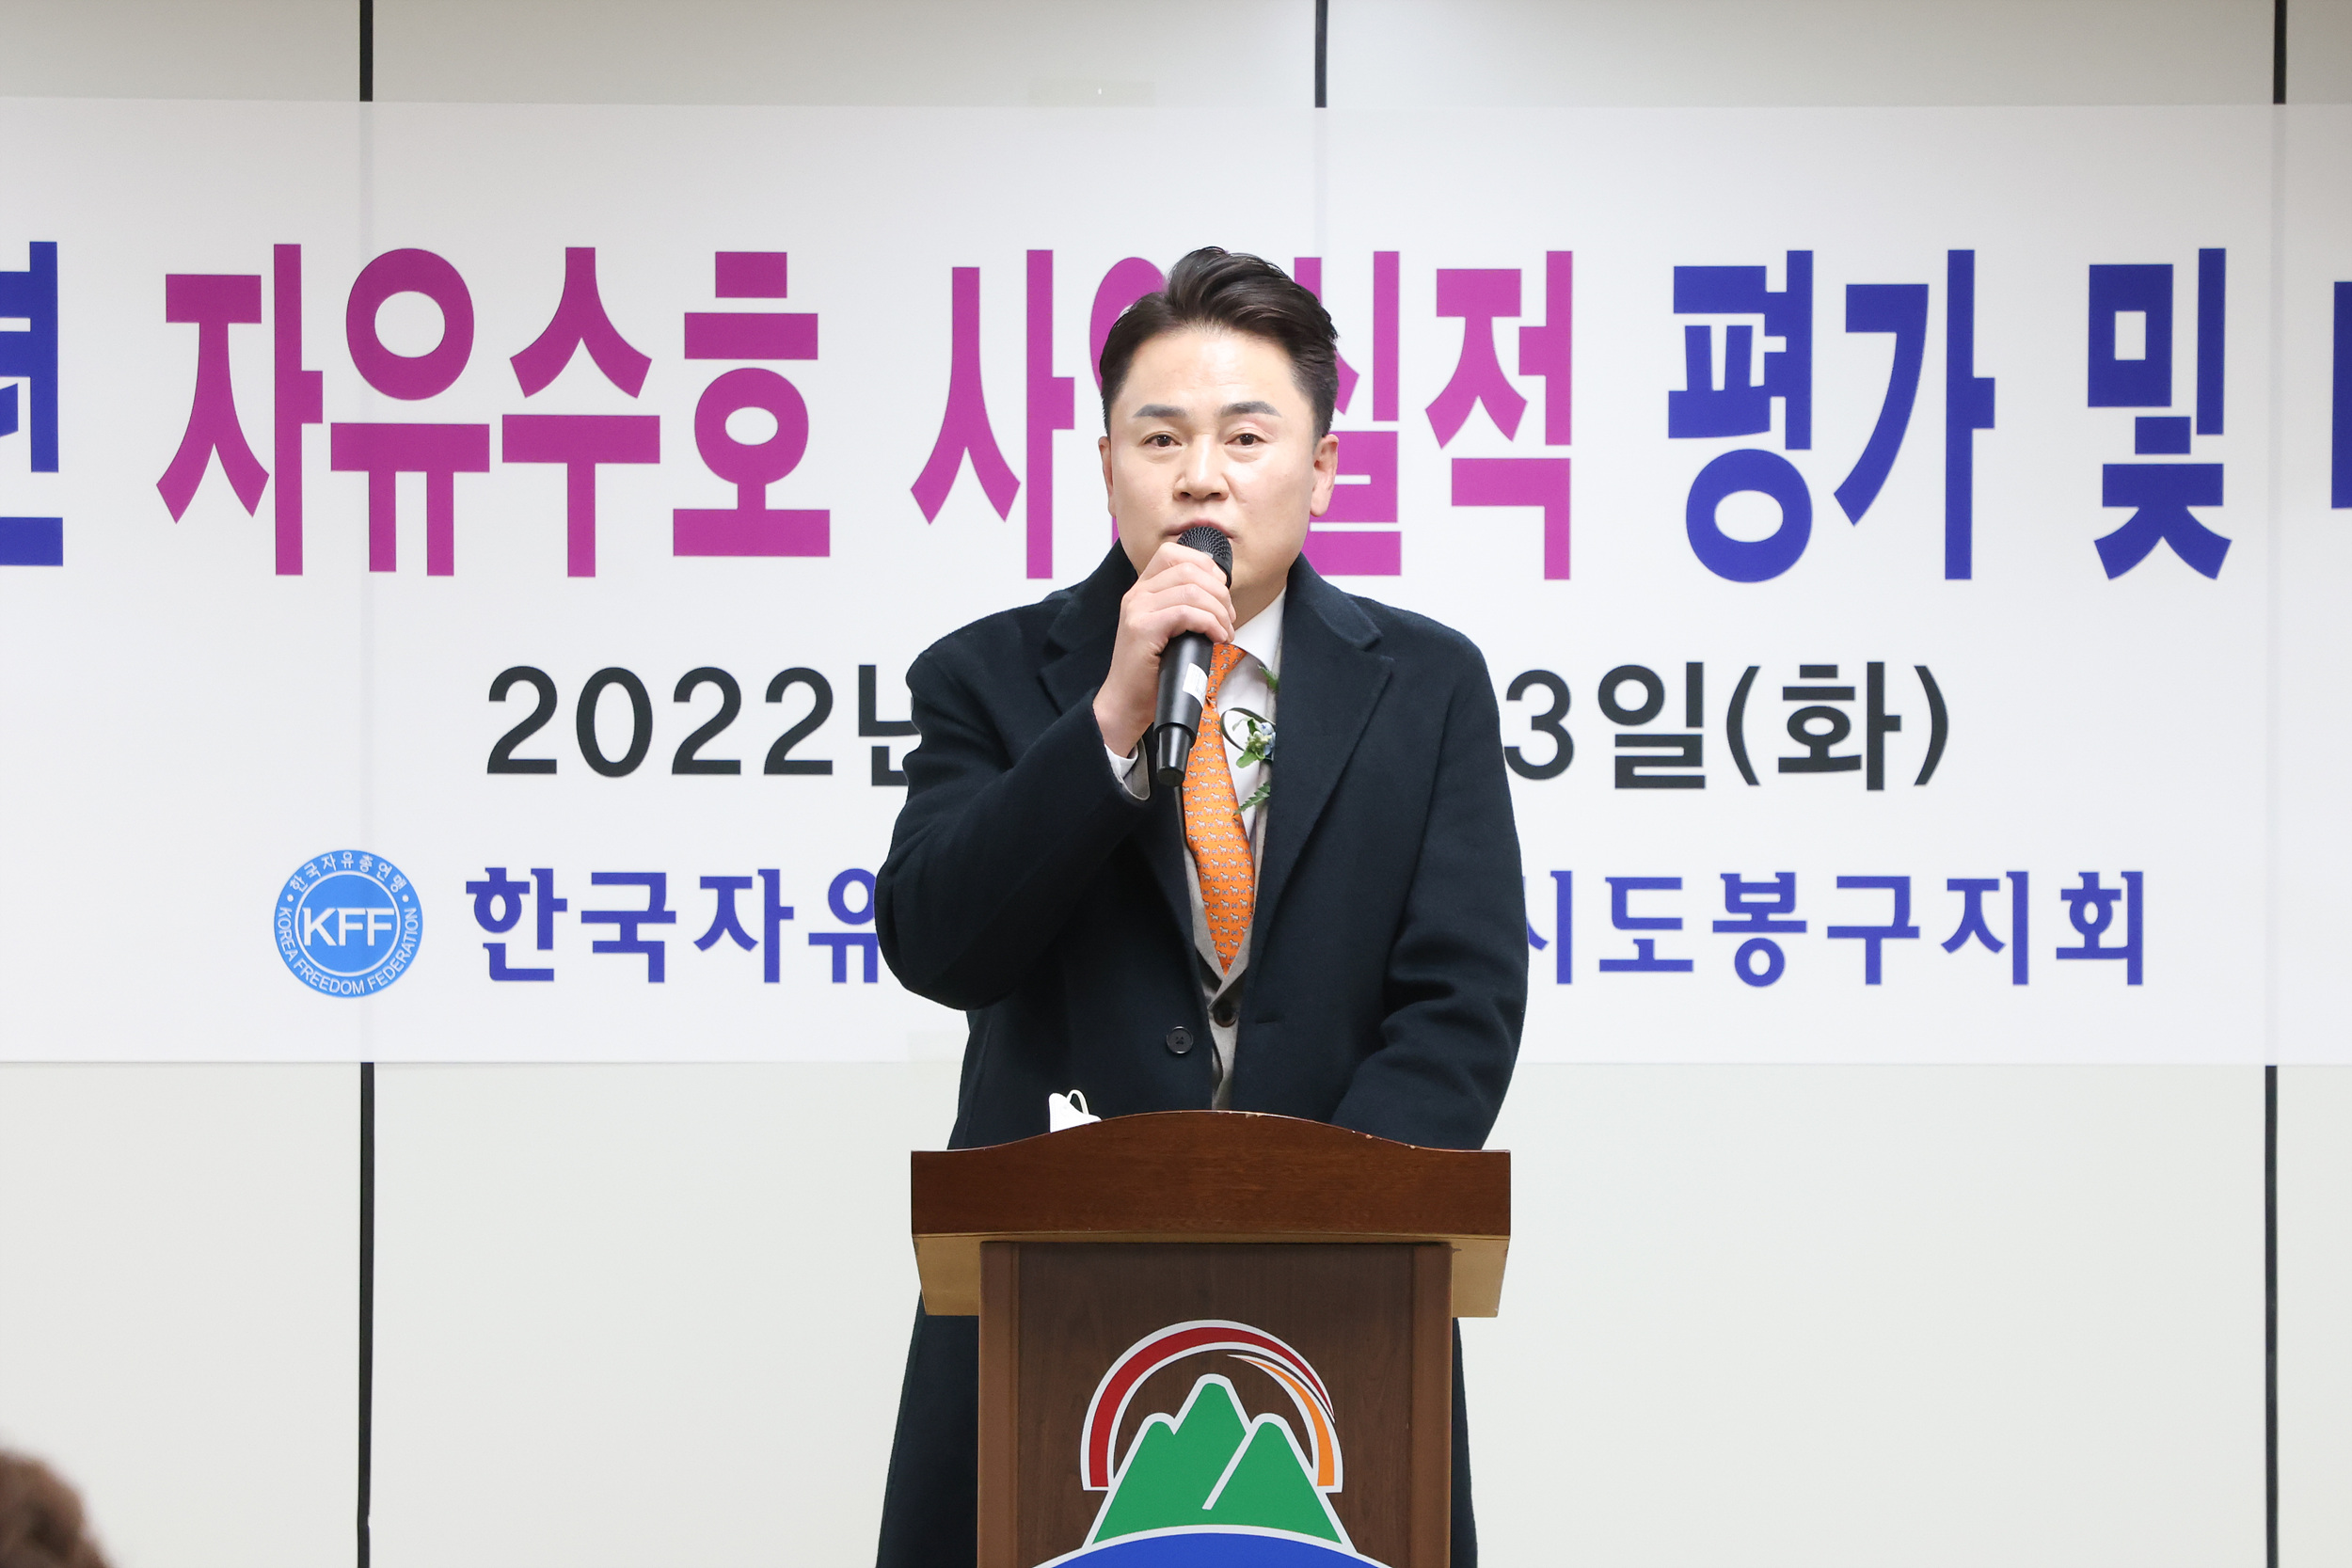 한국자유총연맹 도봉구지회 자유수호평가 다짐대회 해당 썸네일입니다